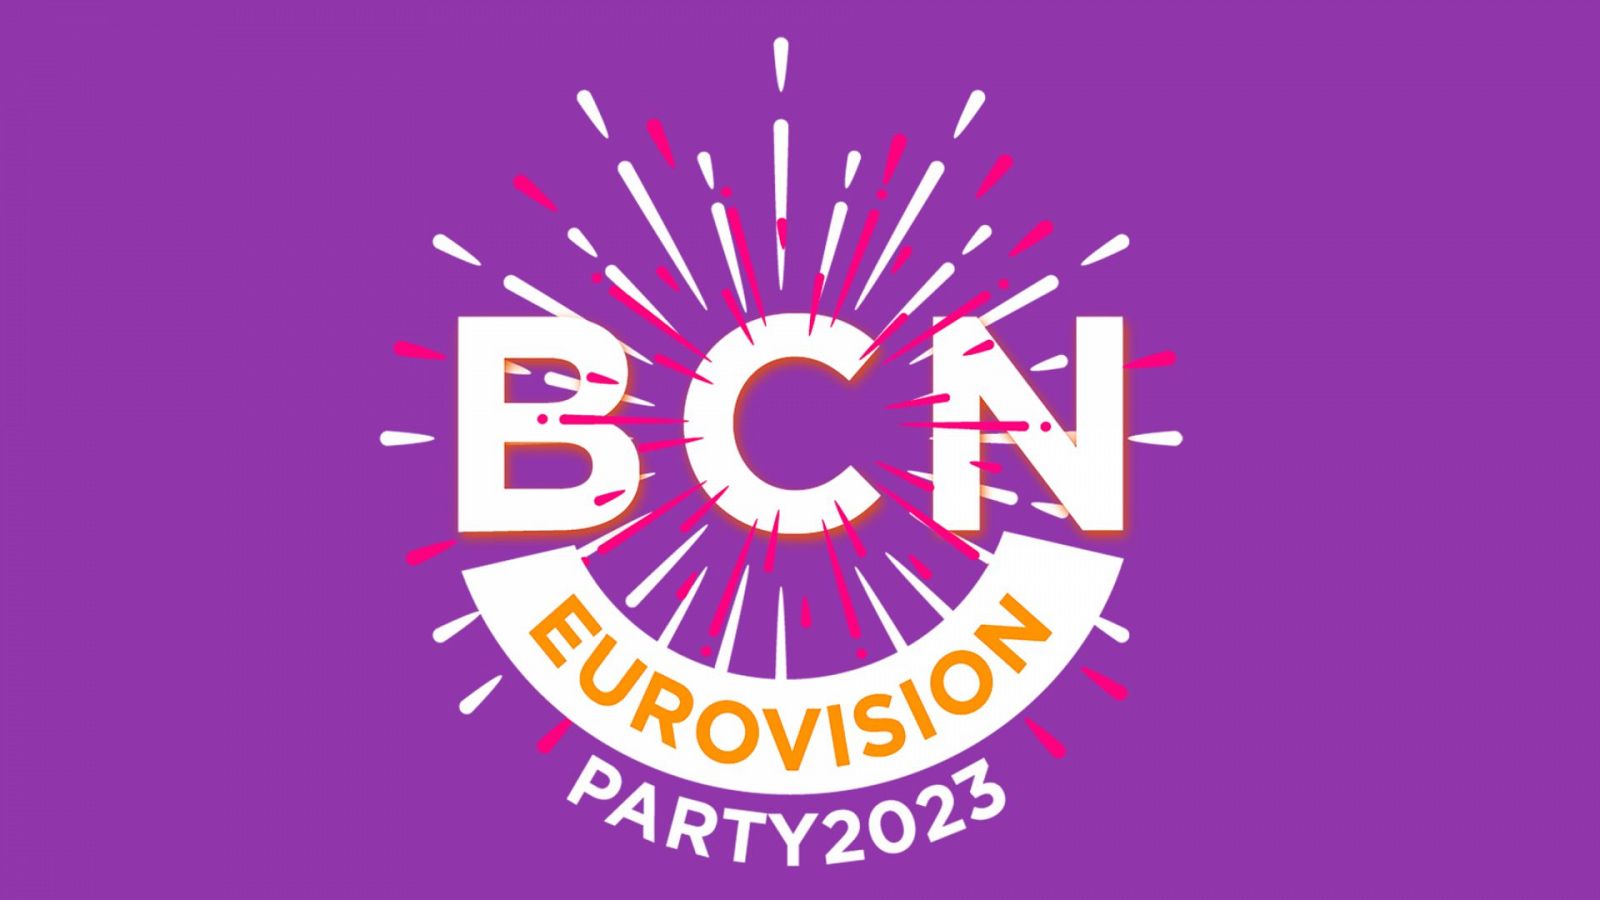 La Barcelona Eurovision Party, el 25 de marzo